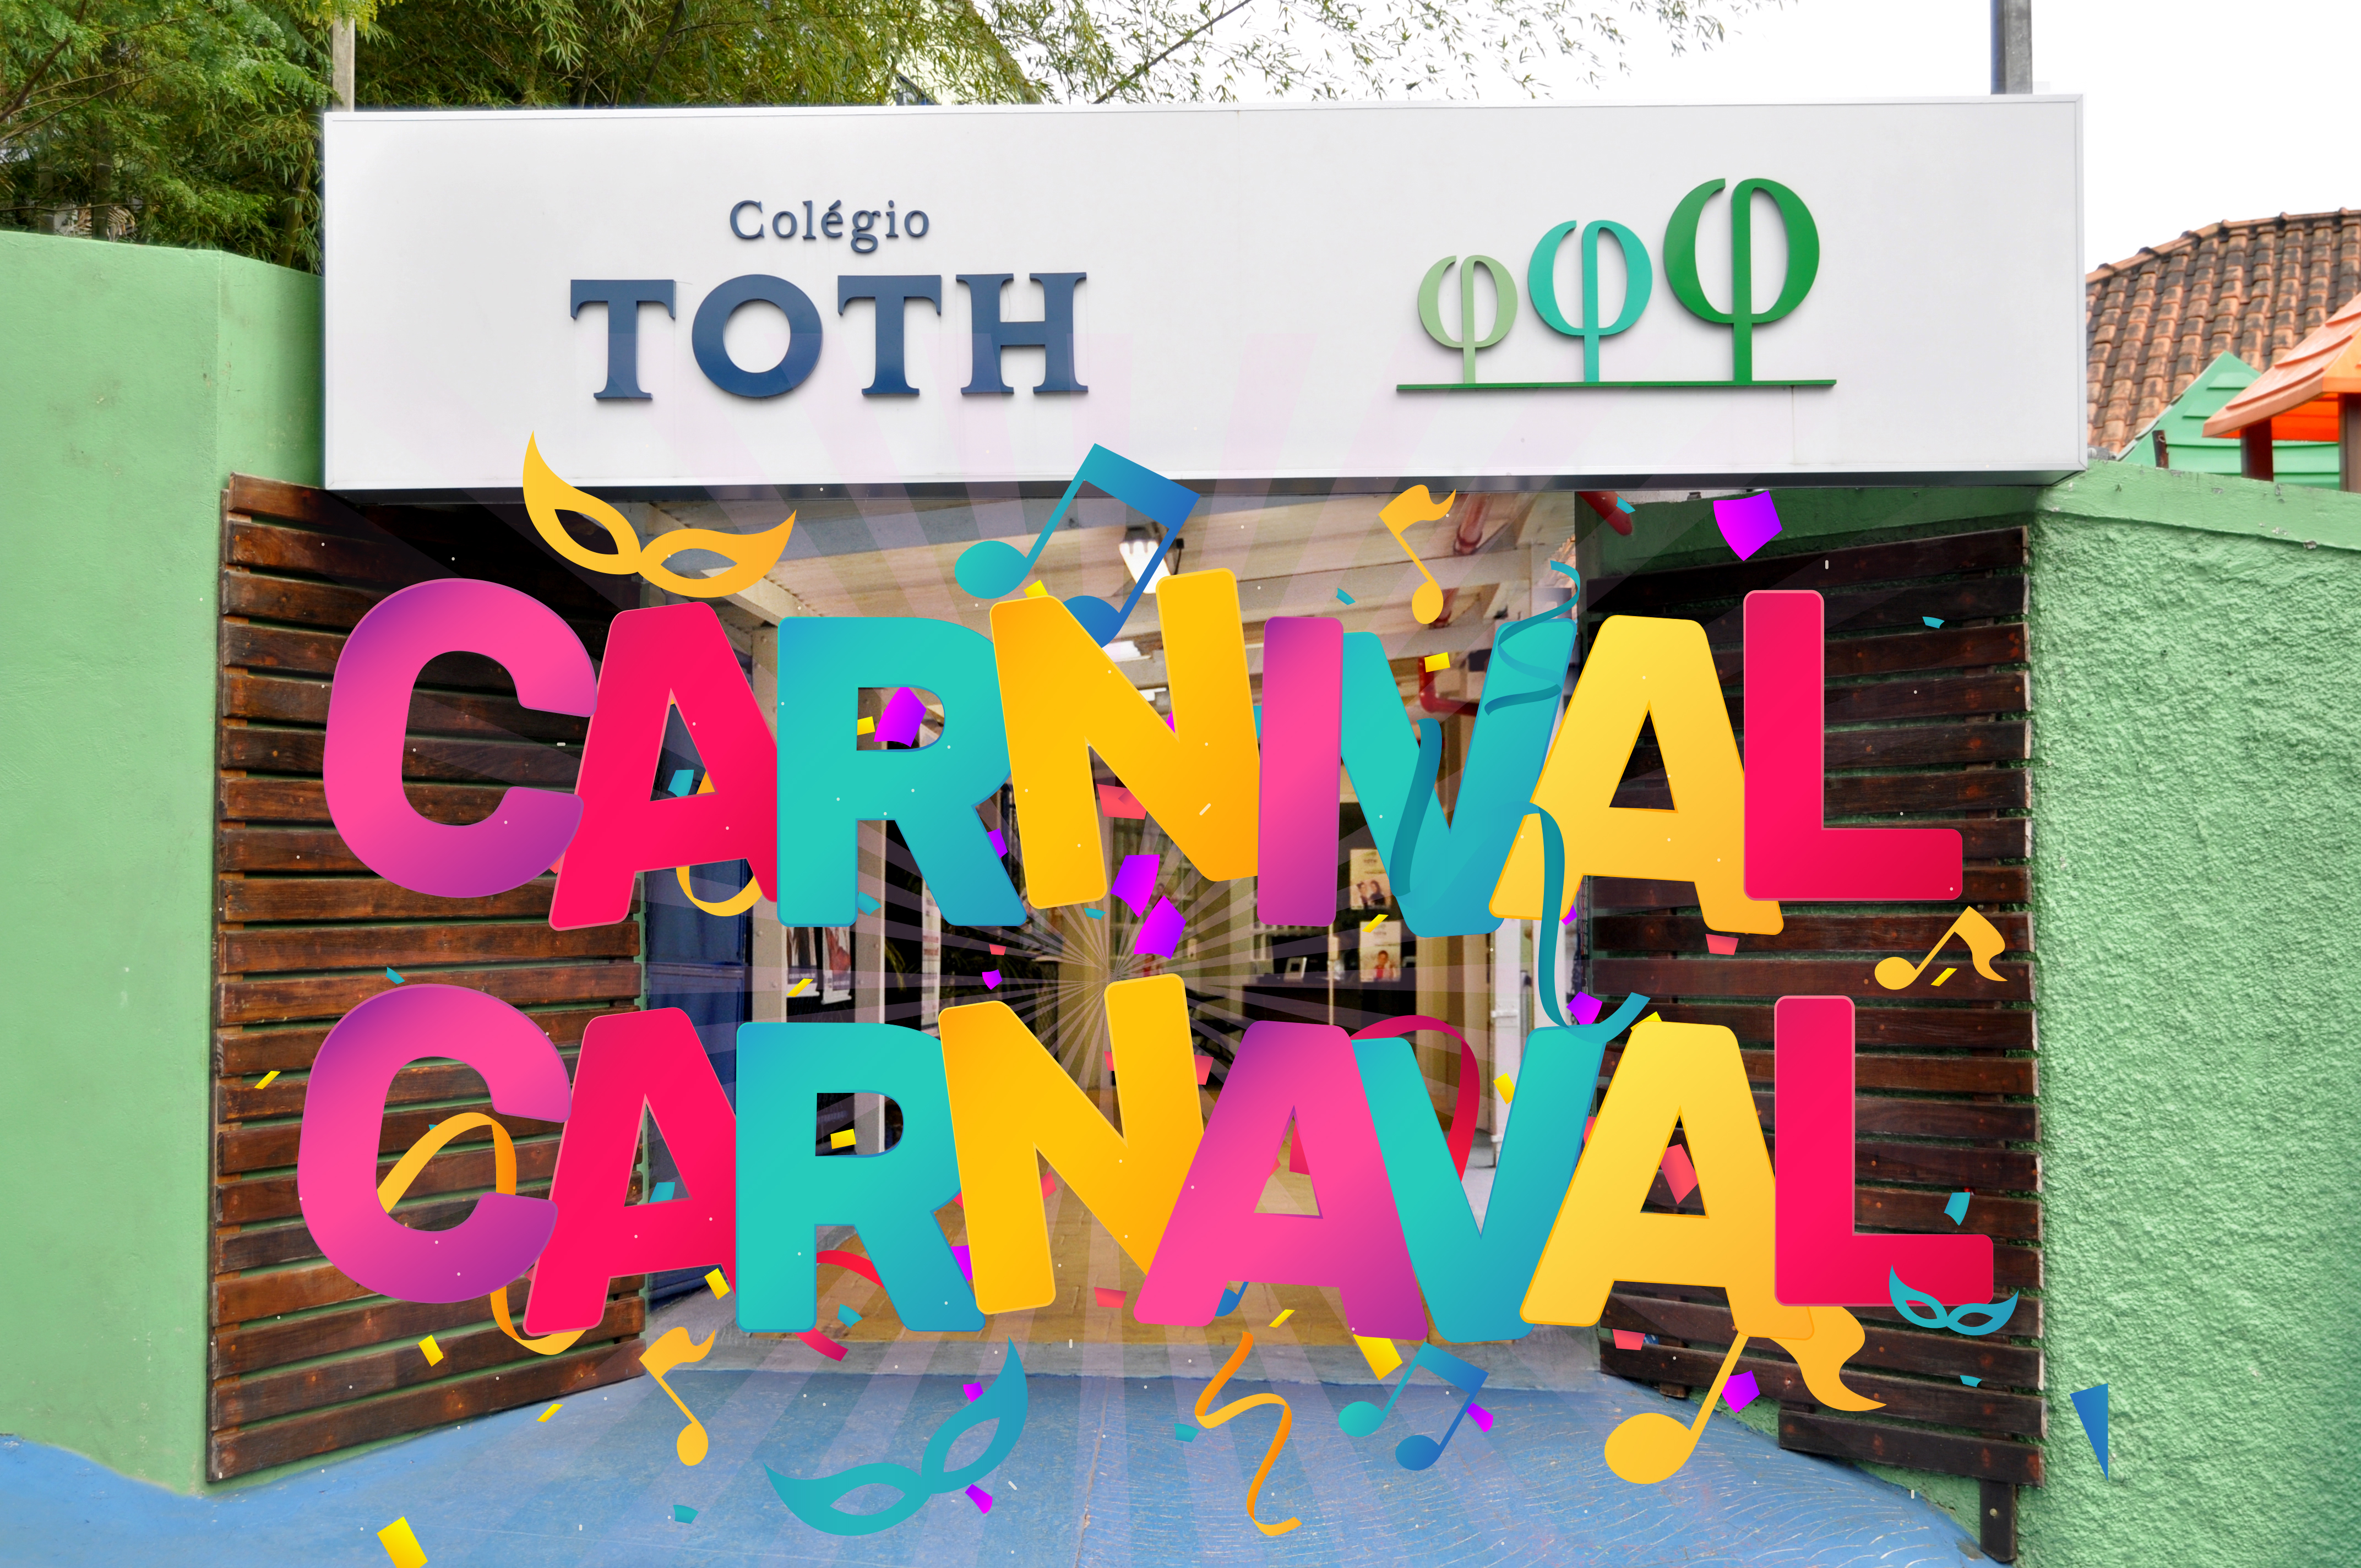 Colégio-Toth-Carnaval-2020-1